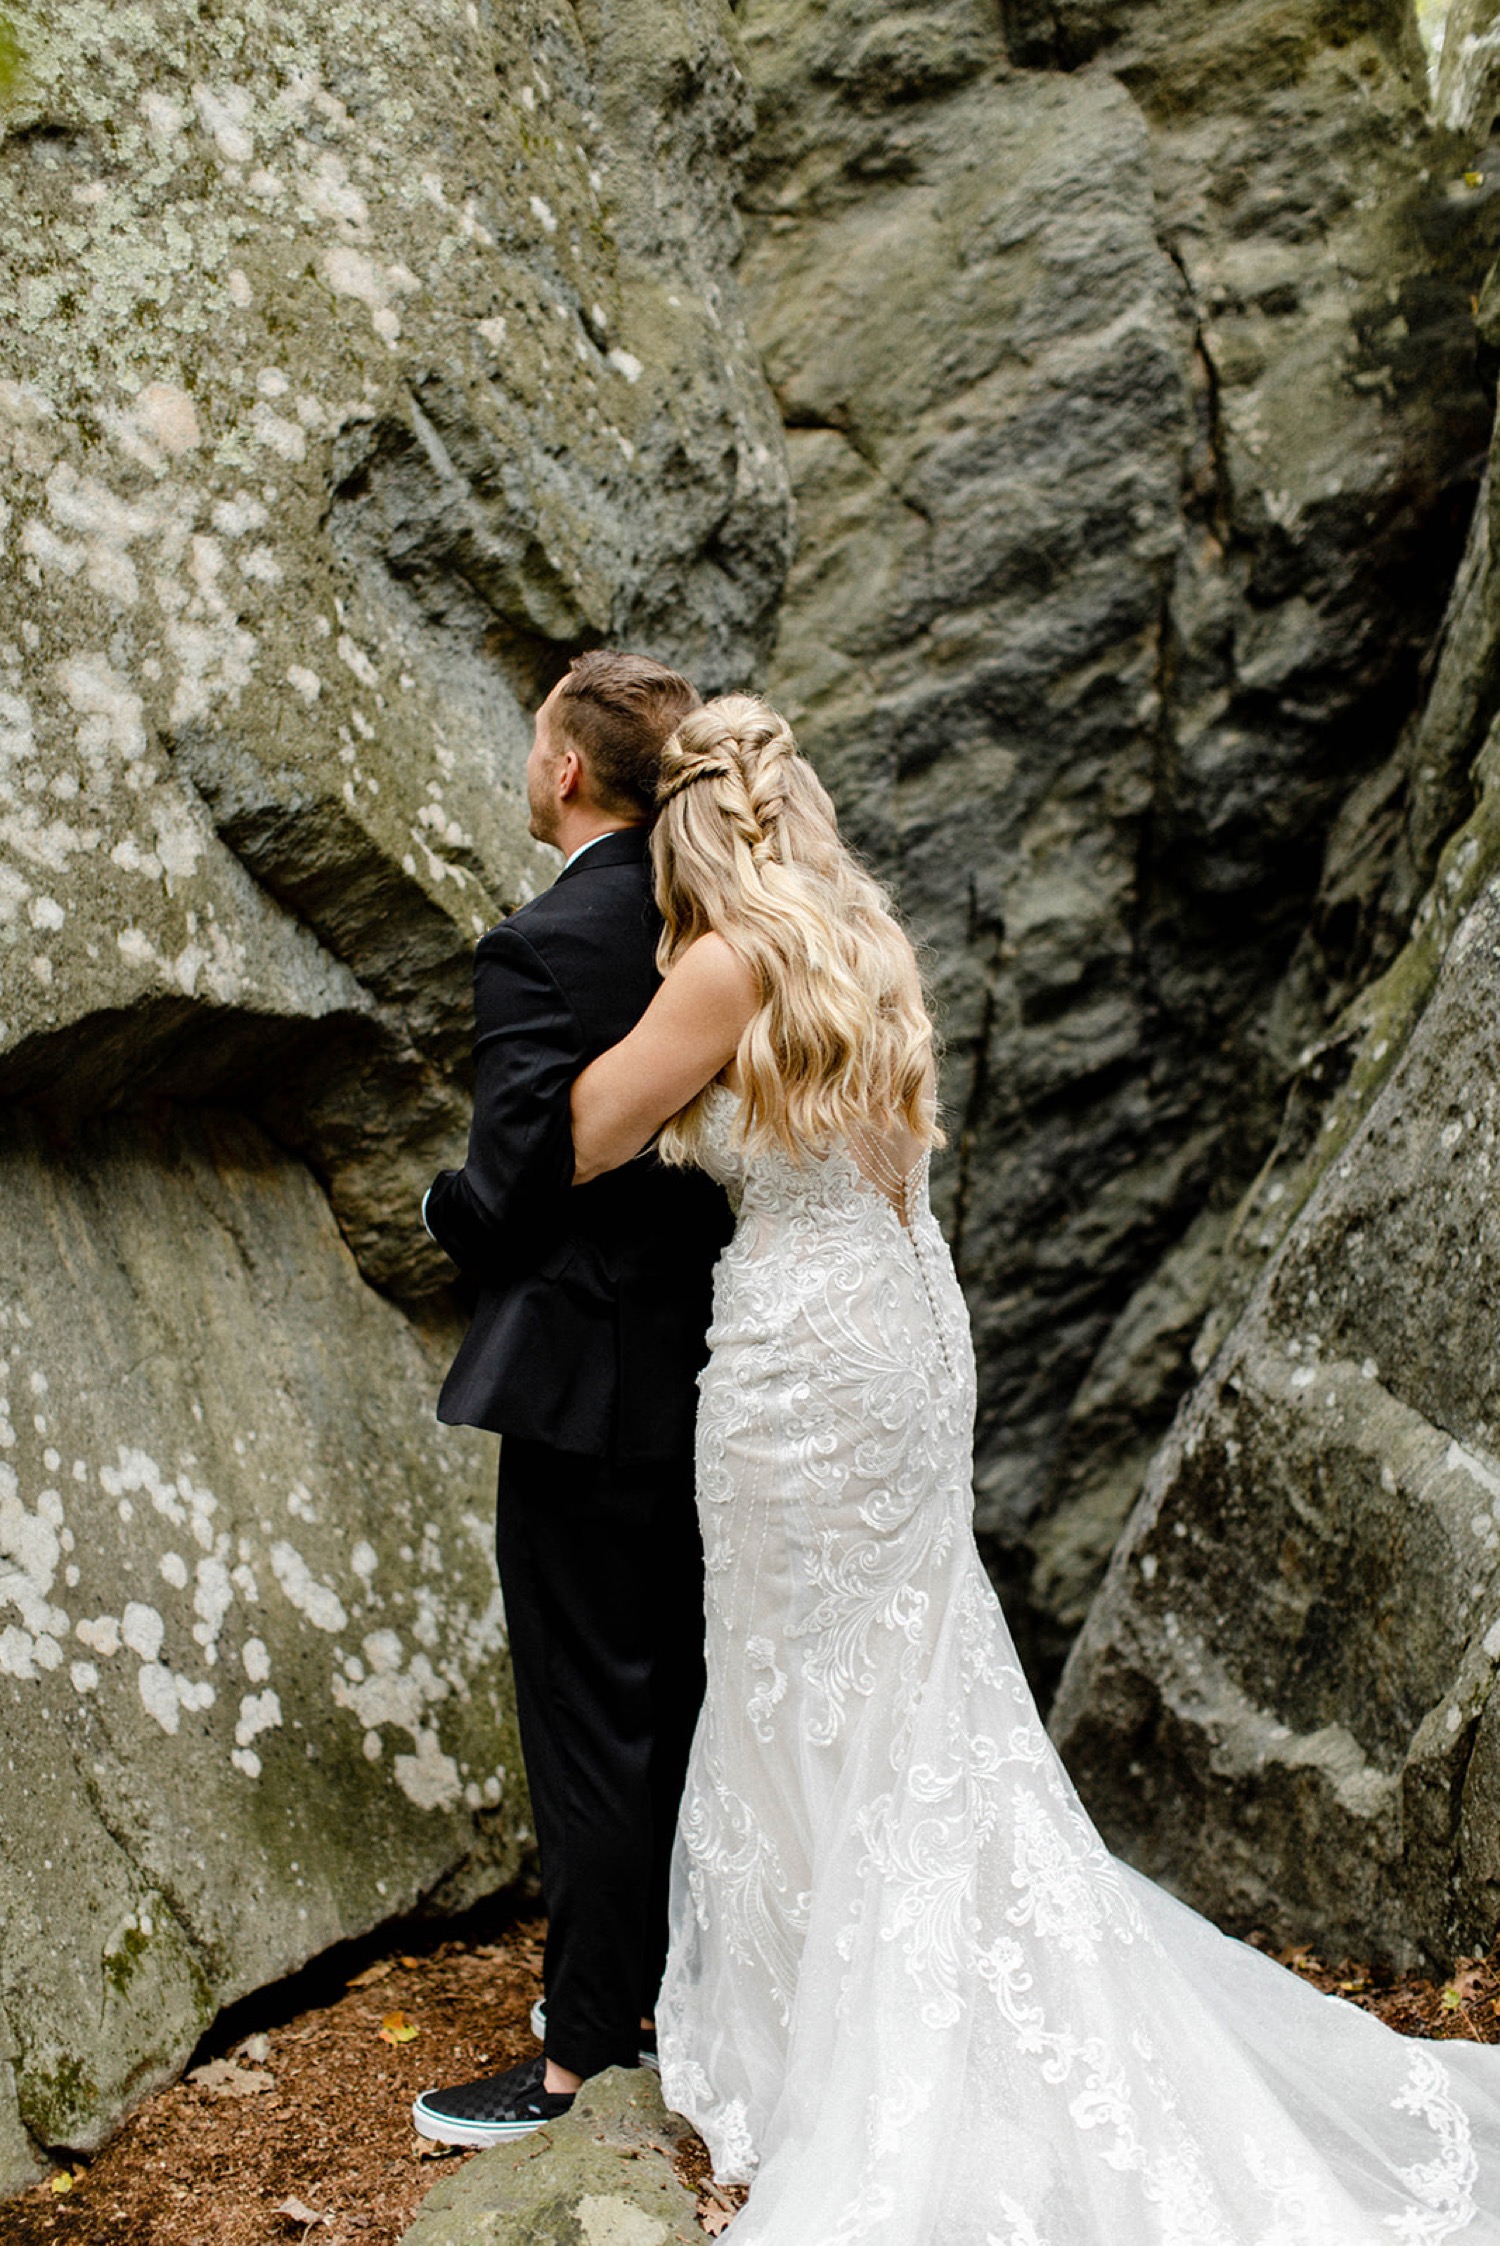 bride hugging groom from behind in rocky outdoor